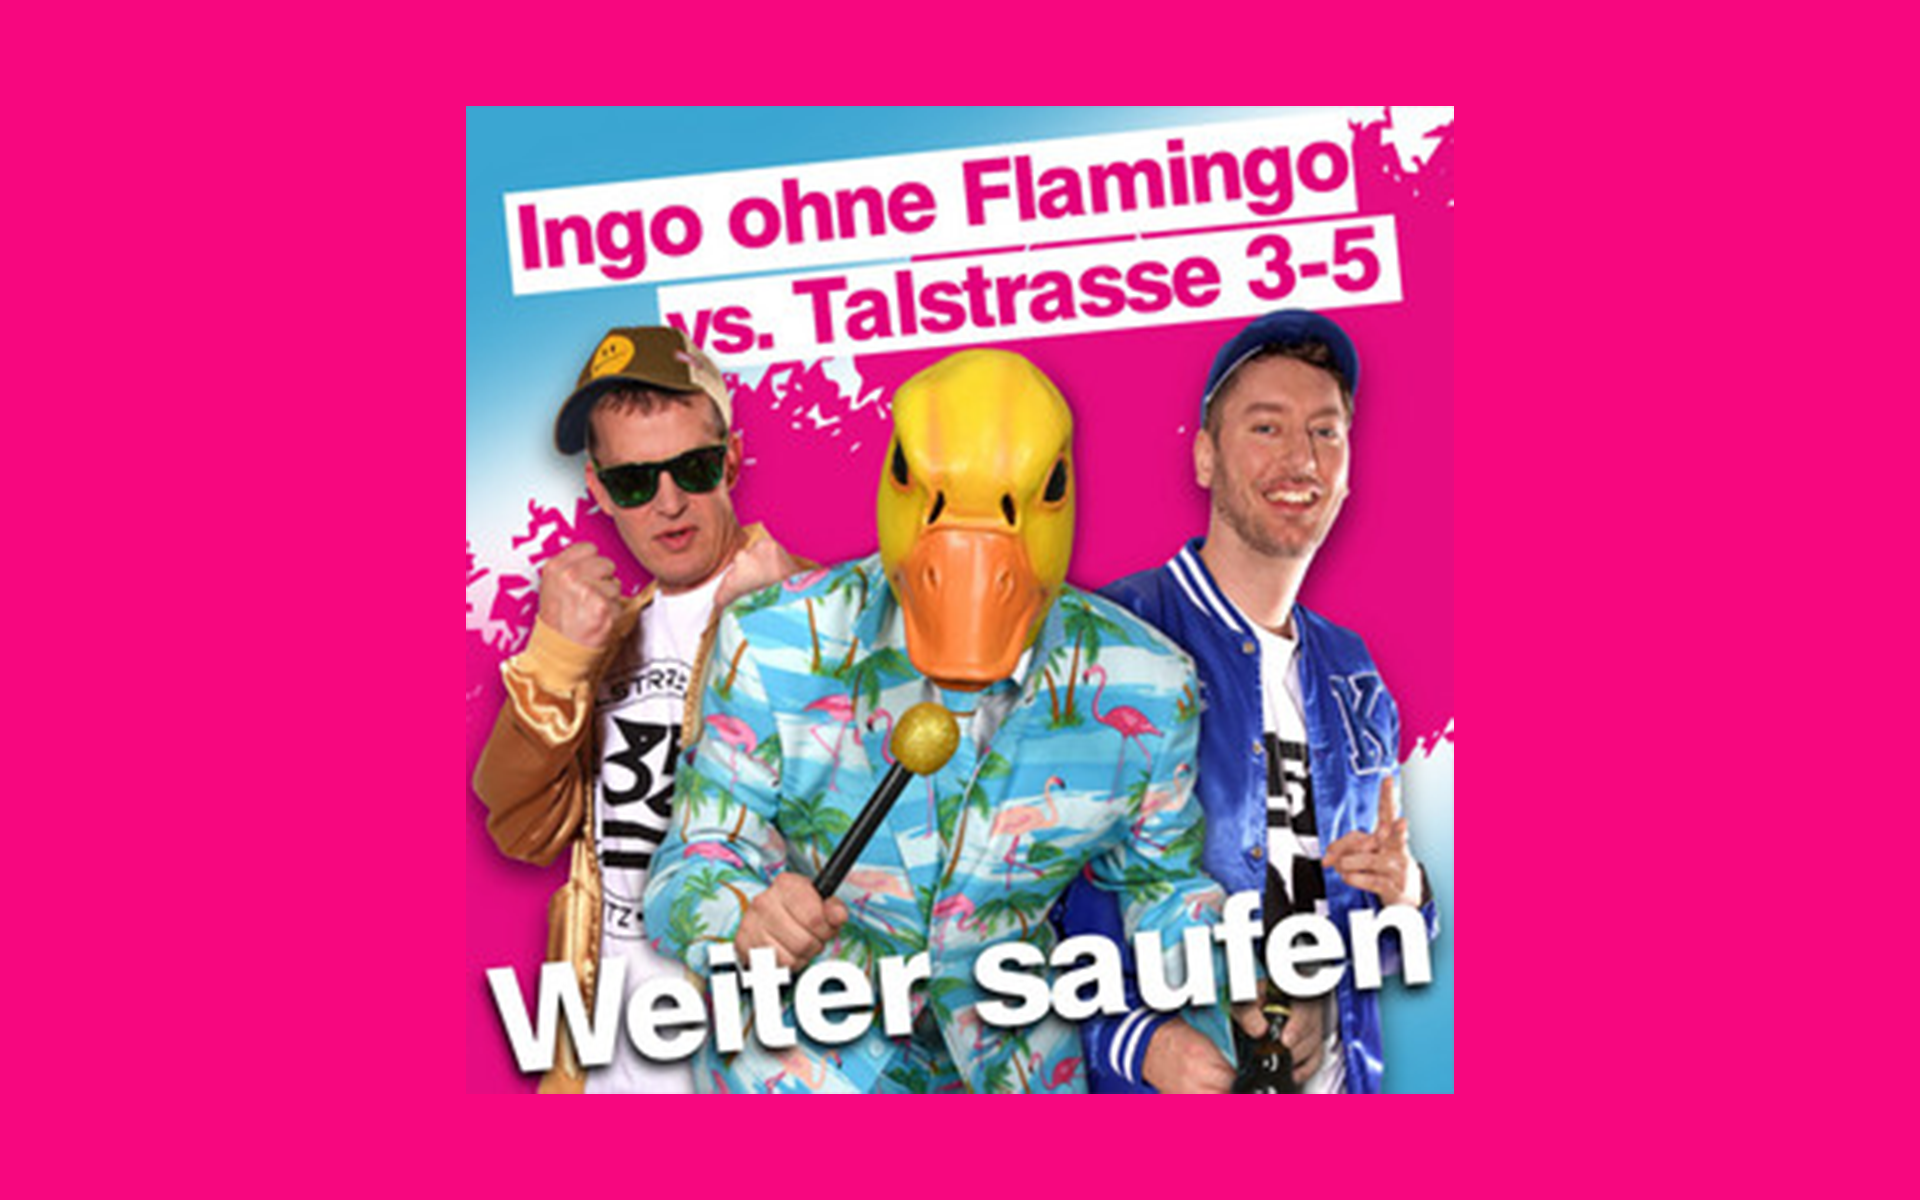 Weiter saufen - Neuer Karnevalshit von Ingo ohne Flamingo